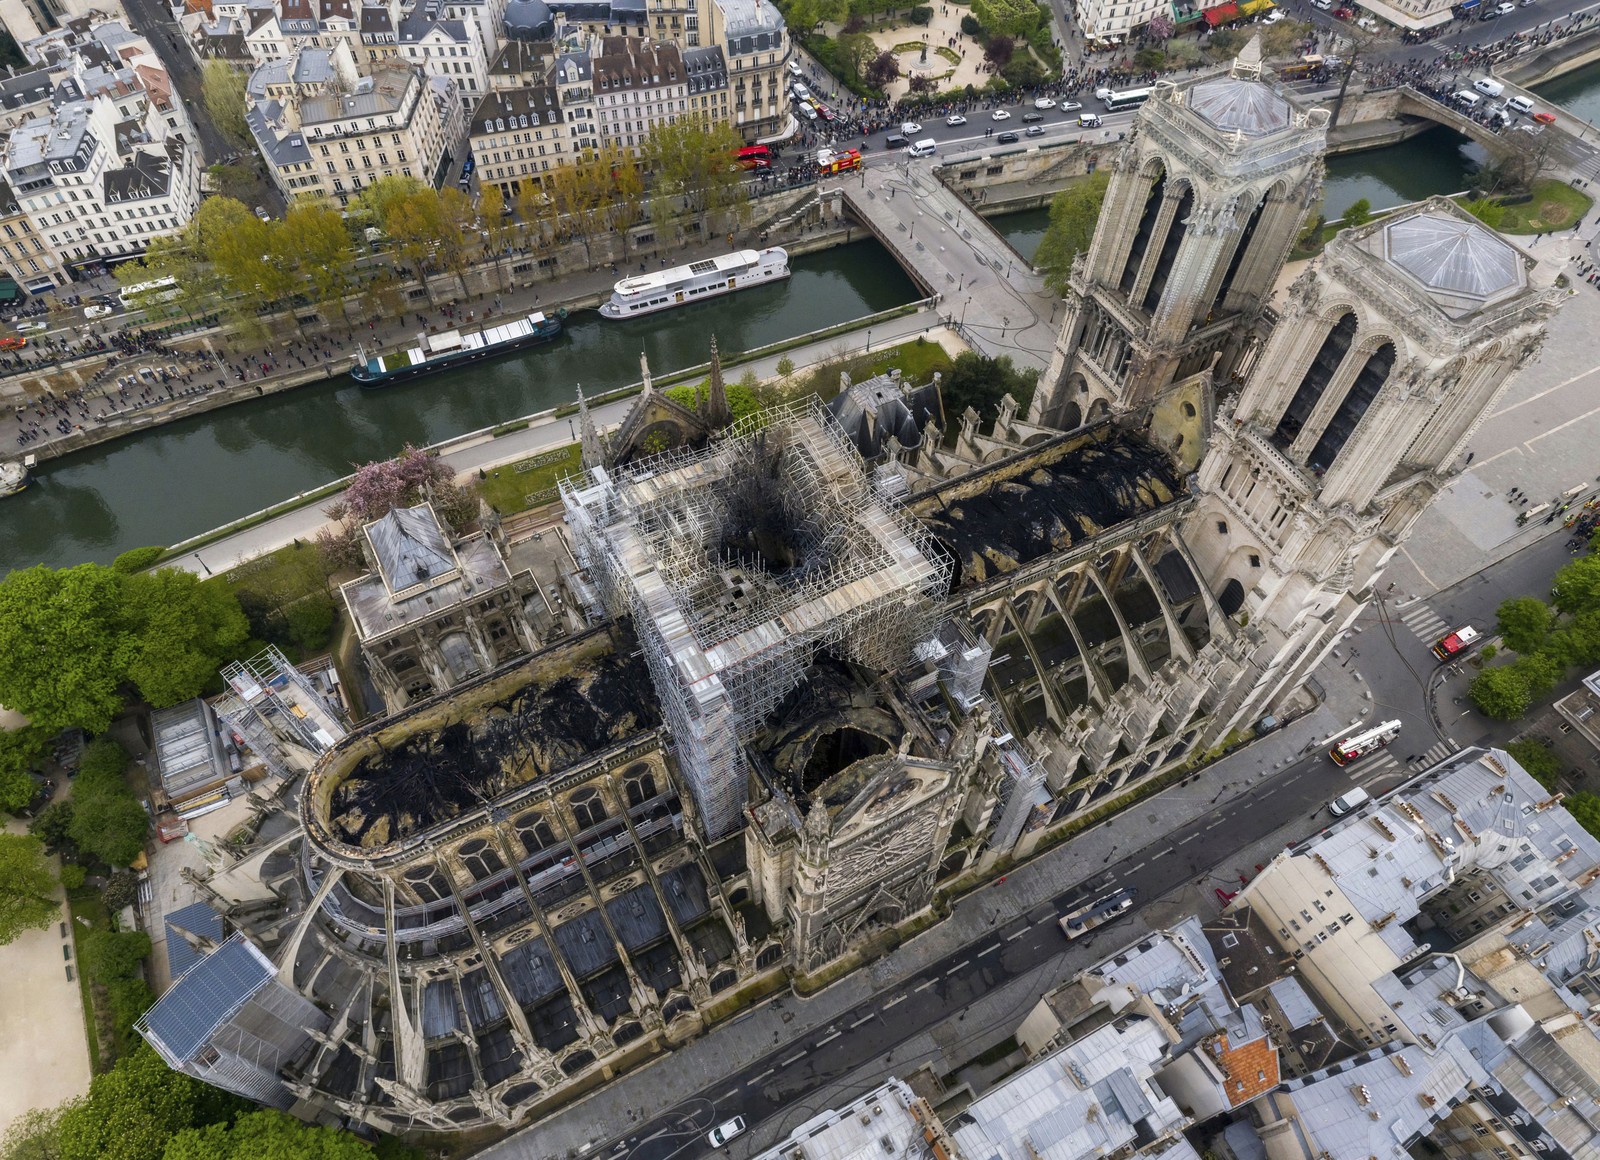 Abelhas da catedral de Notre-Dame escaparam de incêndio